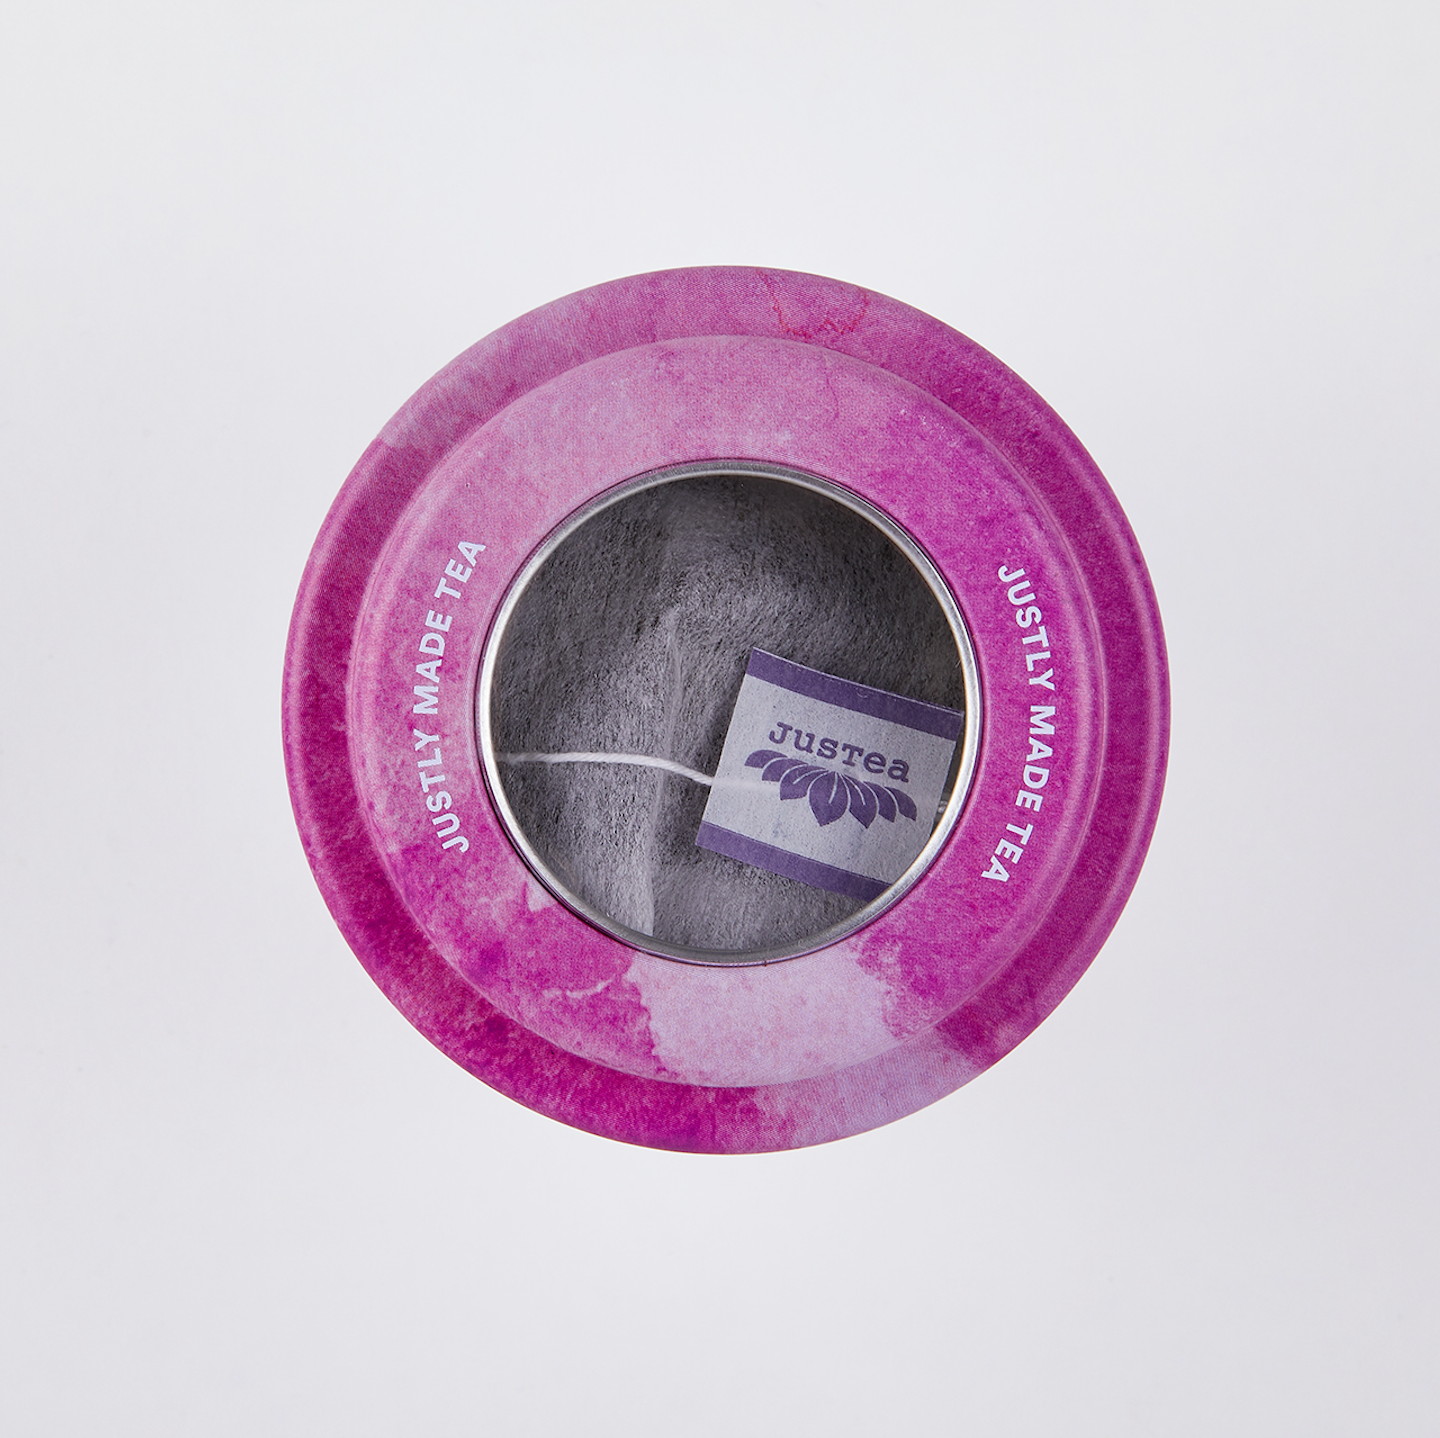 Thé Purple Jasmine - Sachets compostables & boîte de métal